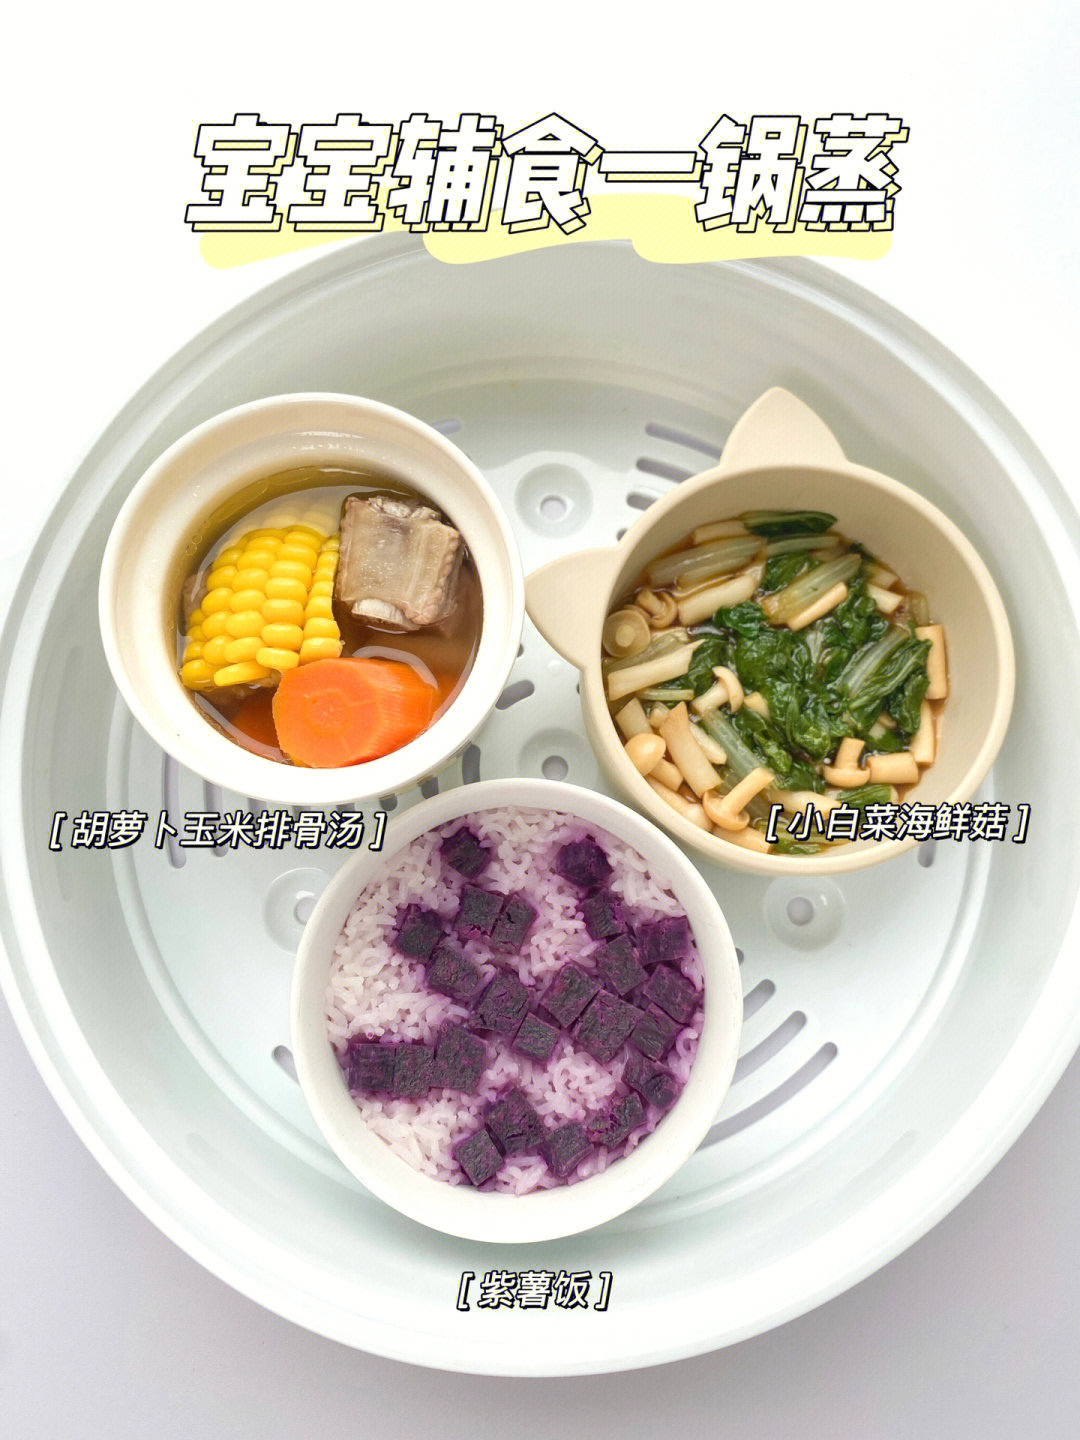 98今日辅食96 胡萝卜玉米排骨汤96 小白菜海鲜菇96 紫薯饭